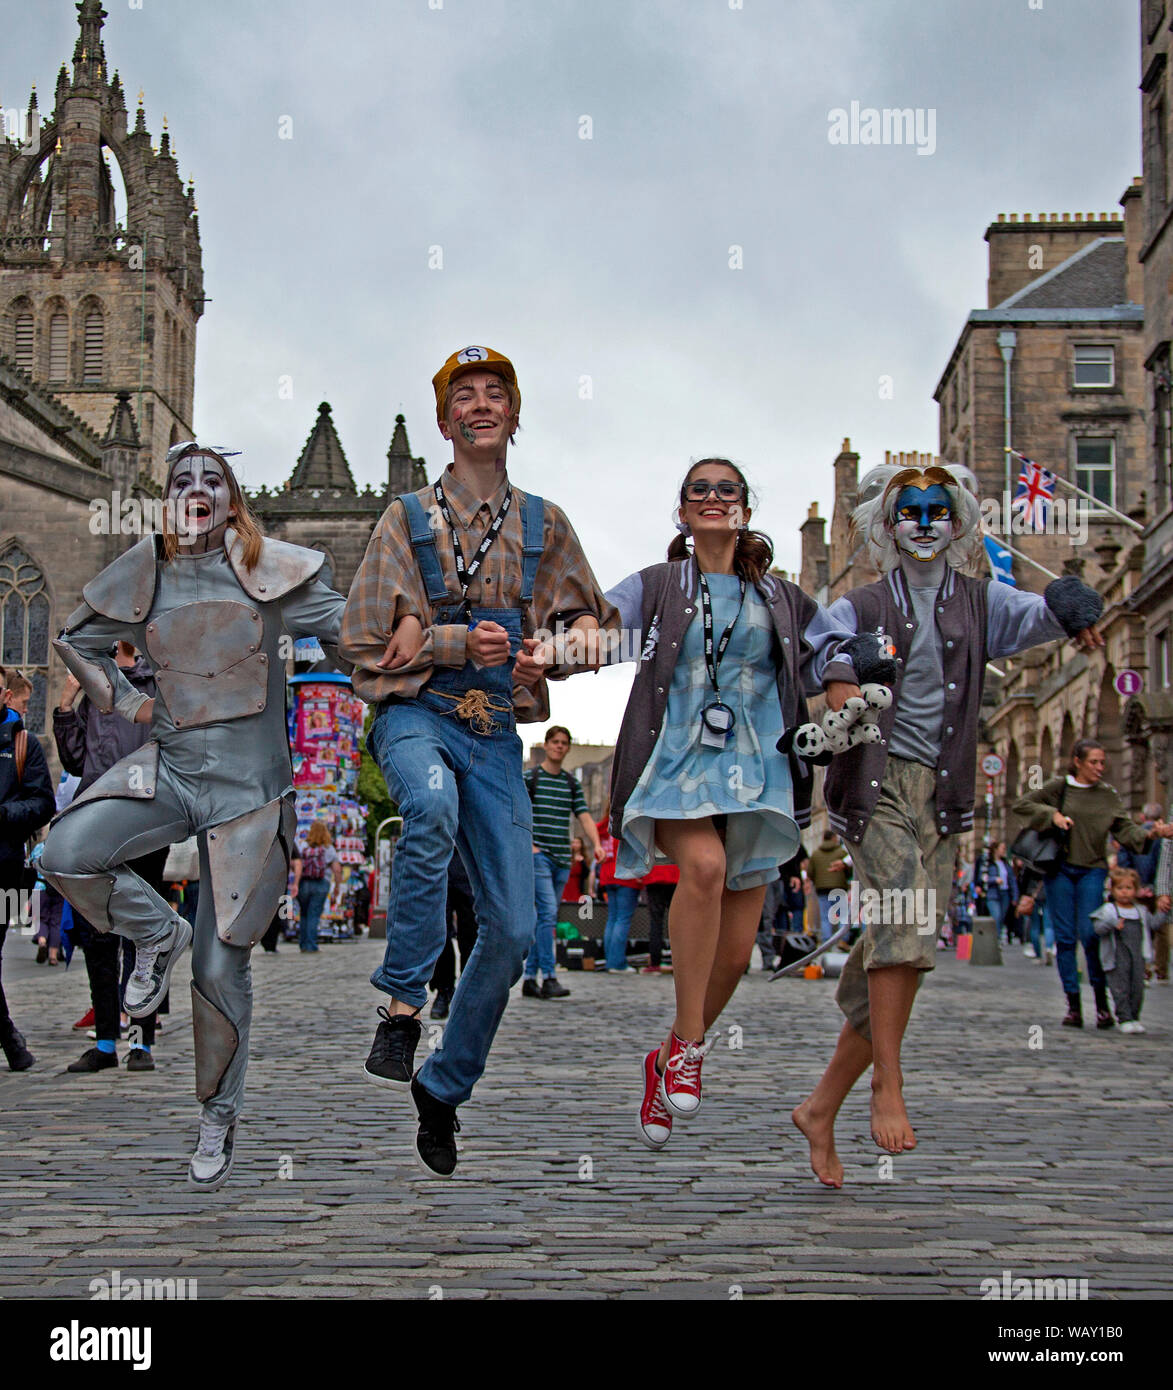 Il Royal Mile di Edimburgo, Scozia, Regno Unito. Il 22 agosto 2019. Edinburgh Fringe Festival azione è rallentare un po' su questo giovedì scorso sulla High Street, non vi era più spazio per passeggiare e meno flyering luogo. I musicisti sono ancora intrattenere il pubblico e gli stadi erano ancora in azione e naturalmente gli artisti di strada sono ancora spada la deglutizione. Colato dal Wizard of Oz, nello spazio @Niddry Street. Foto Stock